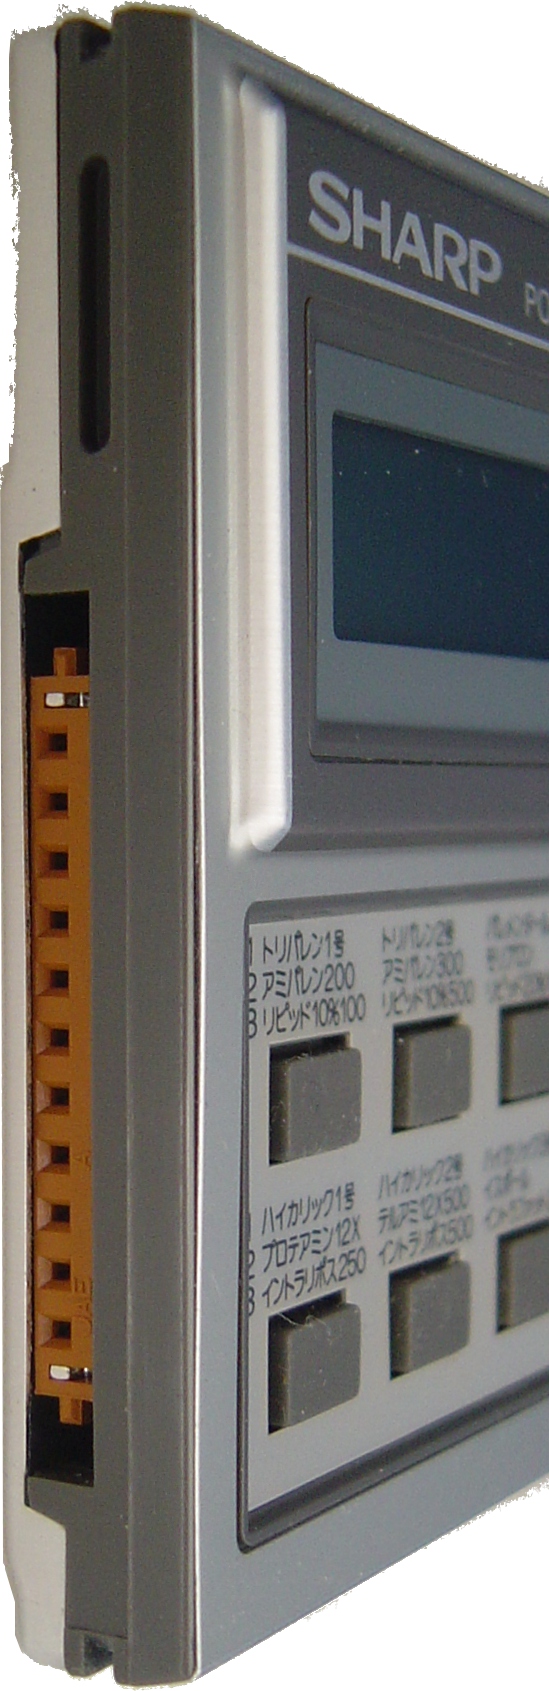 SHARP PC-1270 ポケットコンピュータ